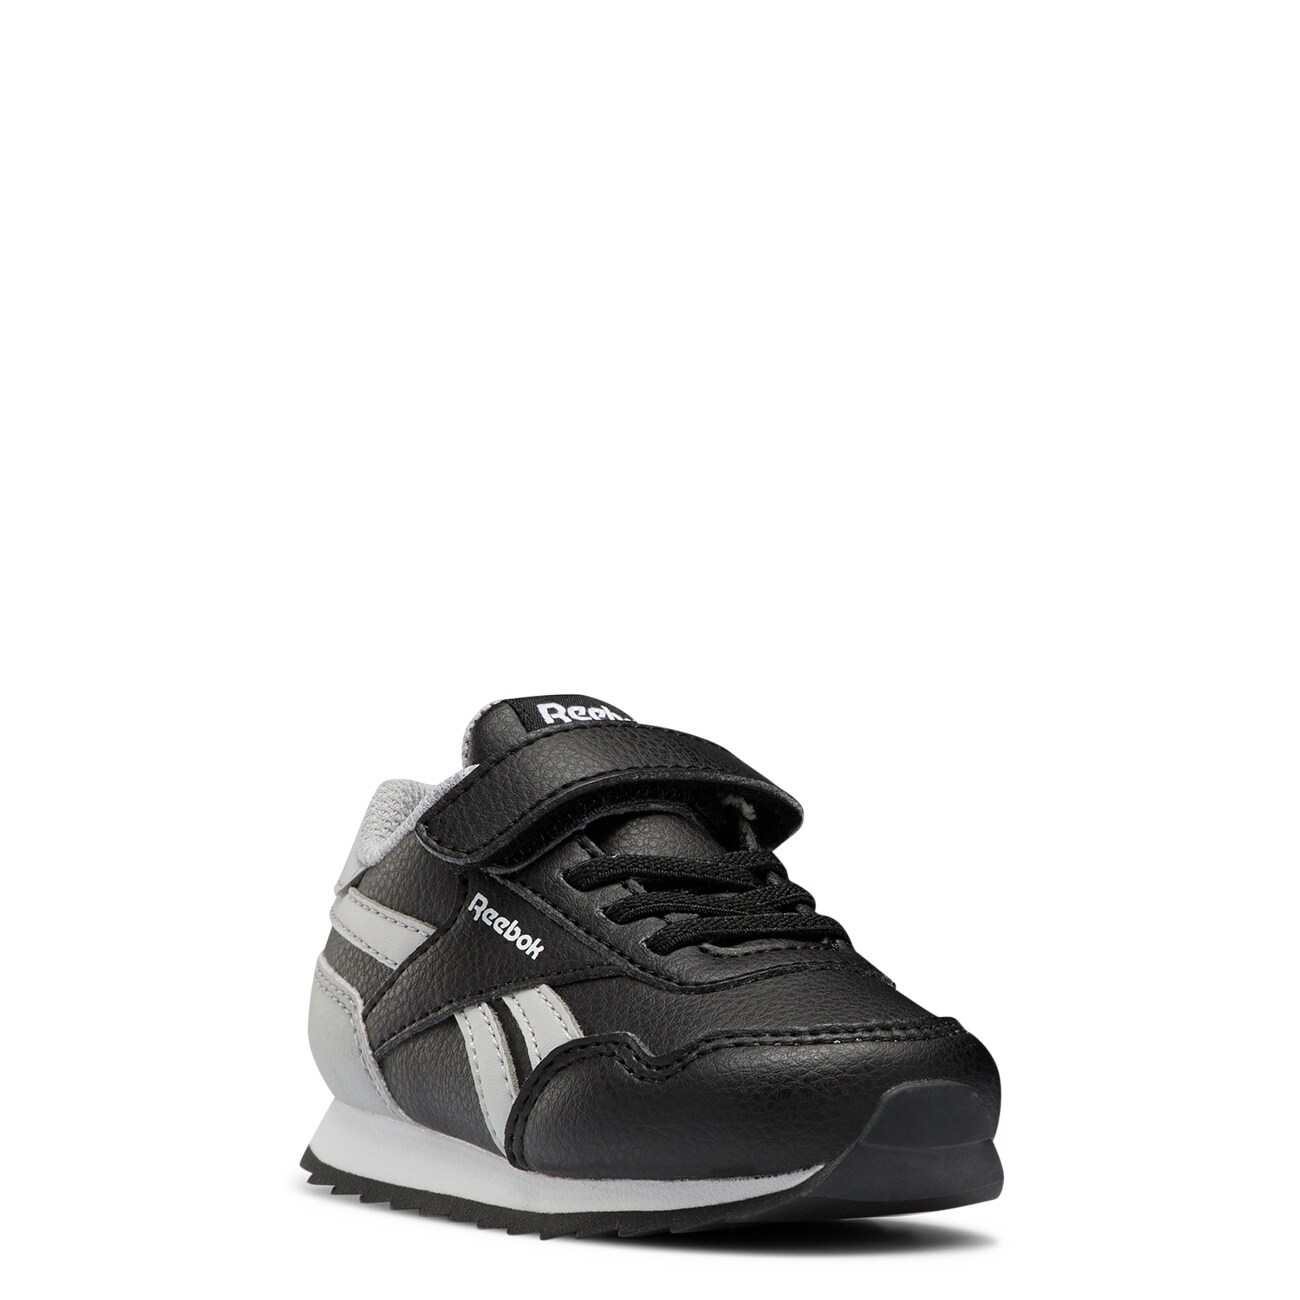 Toddler Boys' Royal CL Jog 3.0 1V Running Shoe